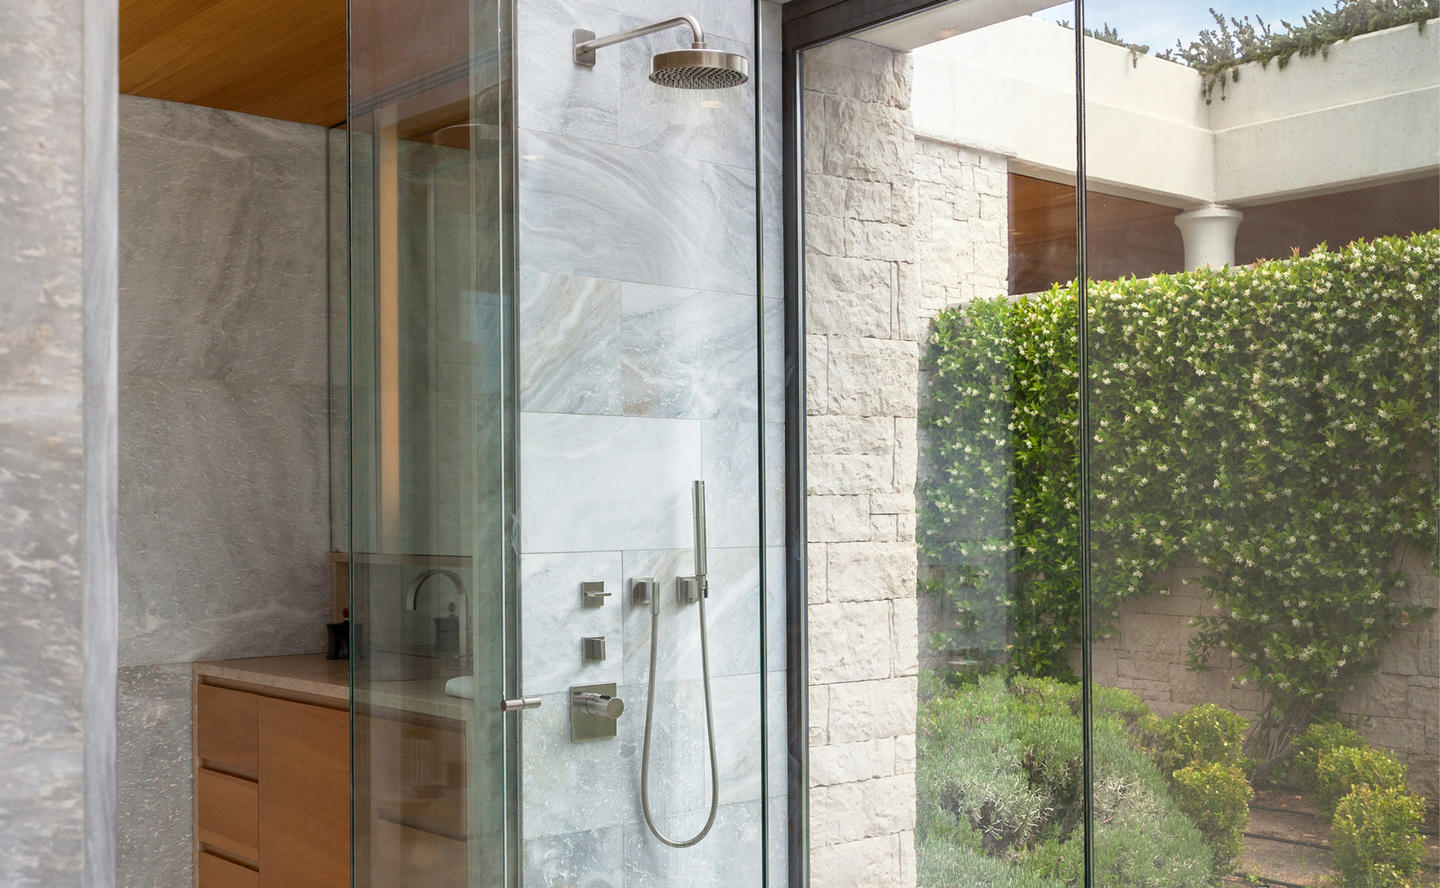 Shower in Bathroom, Four-Bedroom Villa - Amanzoe, Greece